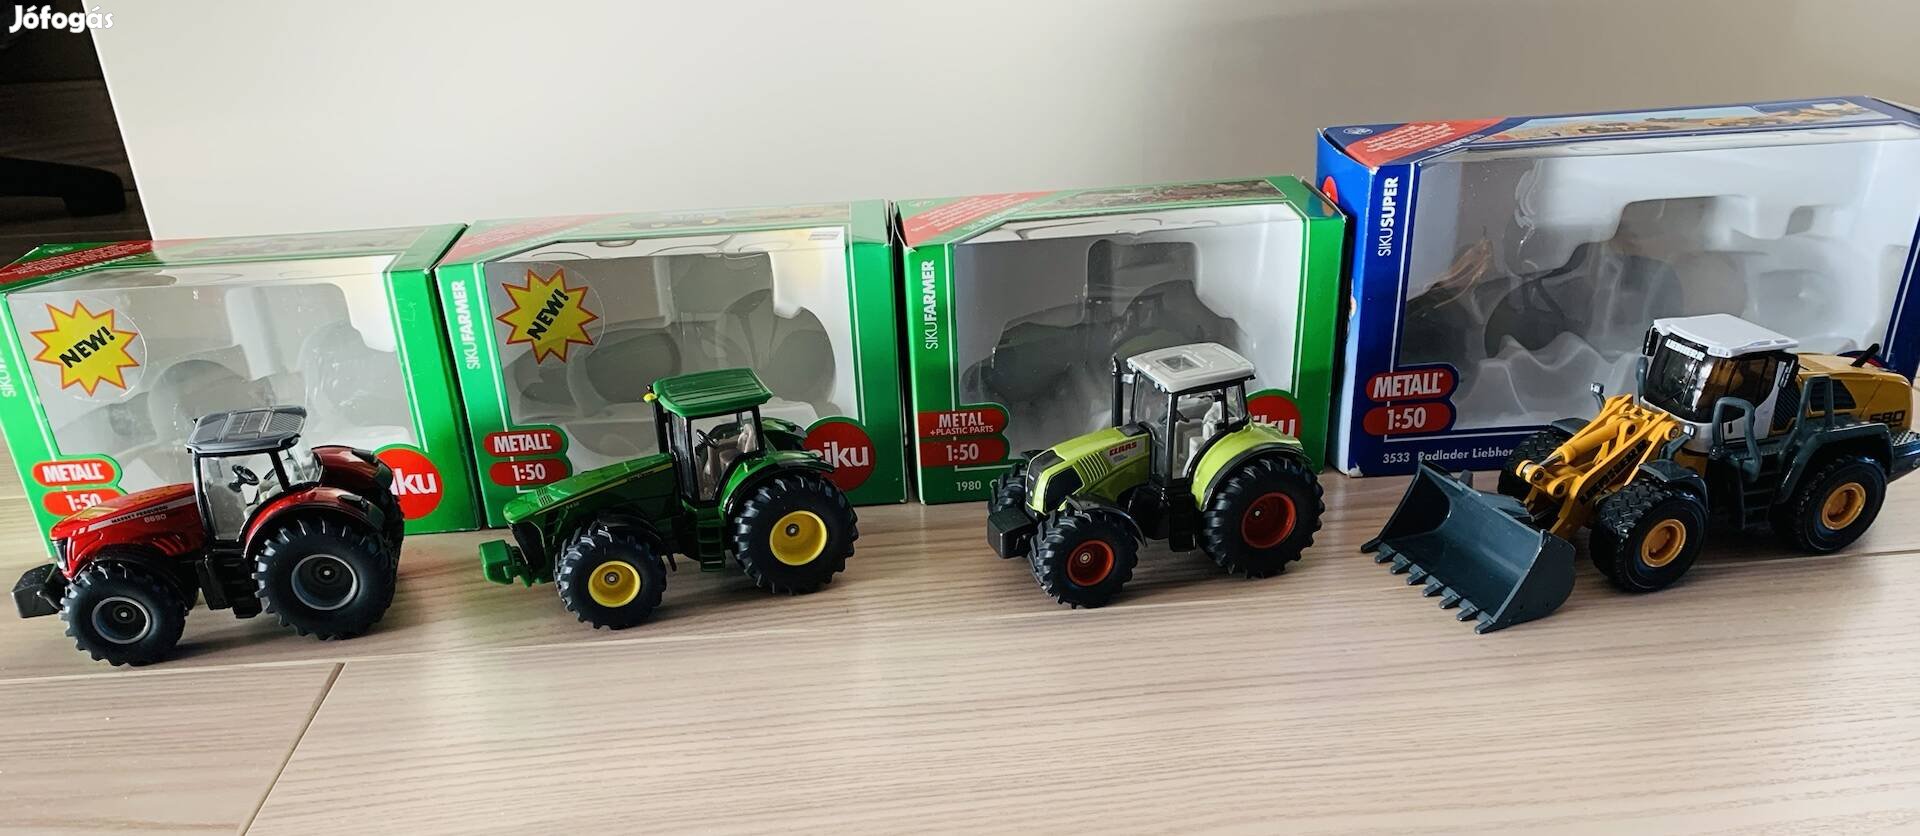 Siku traktorok és munkagép 1:50